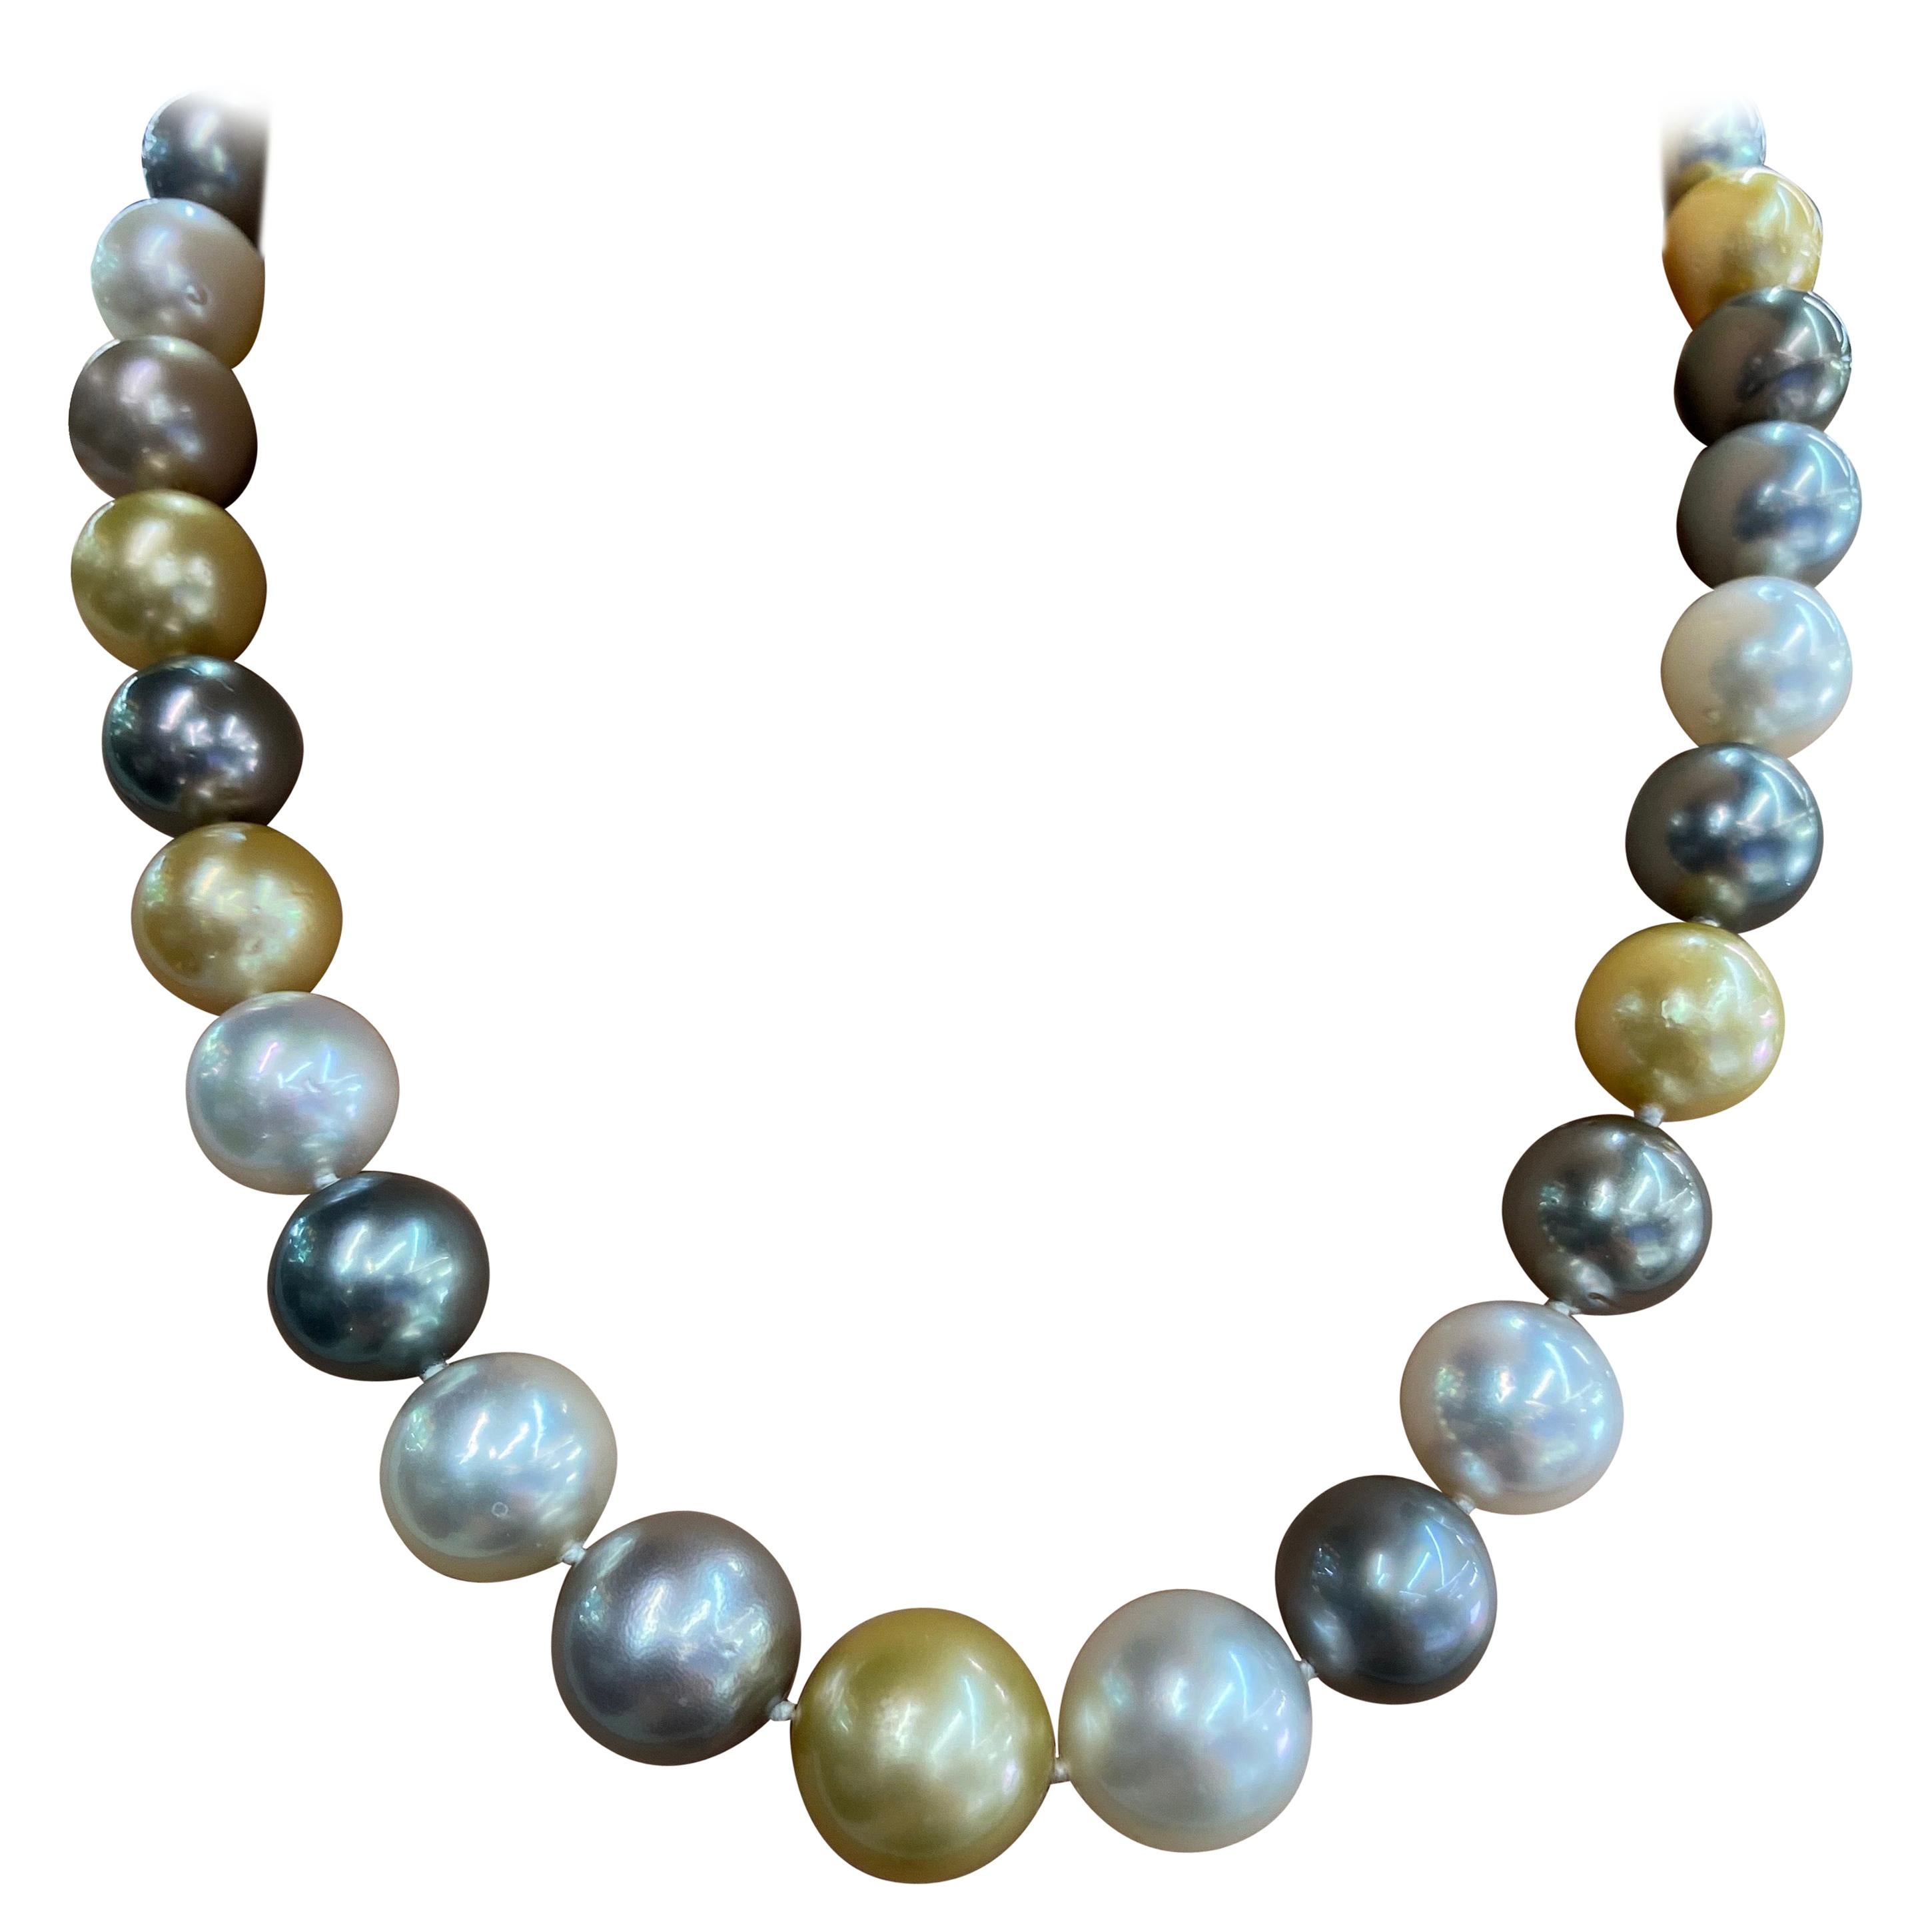 Collier en or 14 carats avec perles blanches et dorées des mers du Sud et perles de Tahiti